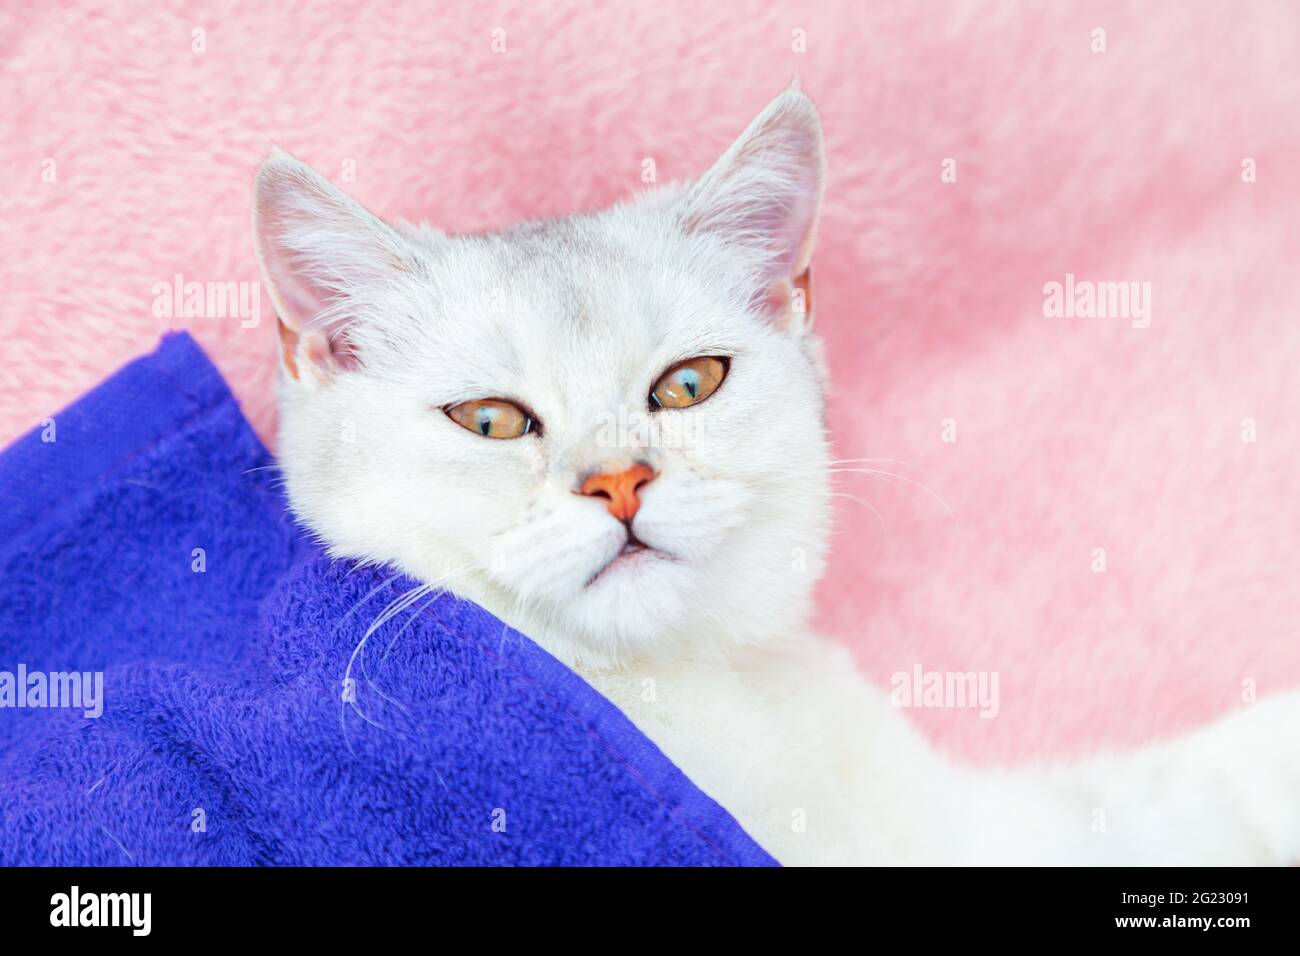 Le chat de chinchilla de shorthair britannique repose sur un couvre-lit rose. Repos et détente. Banque D'Images